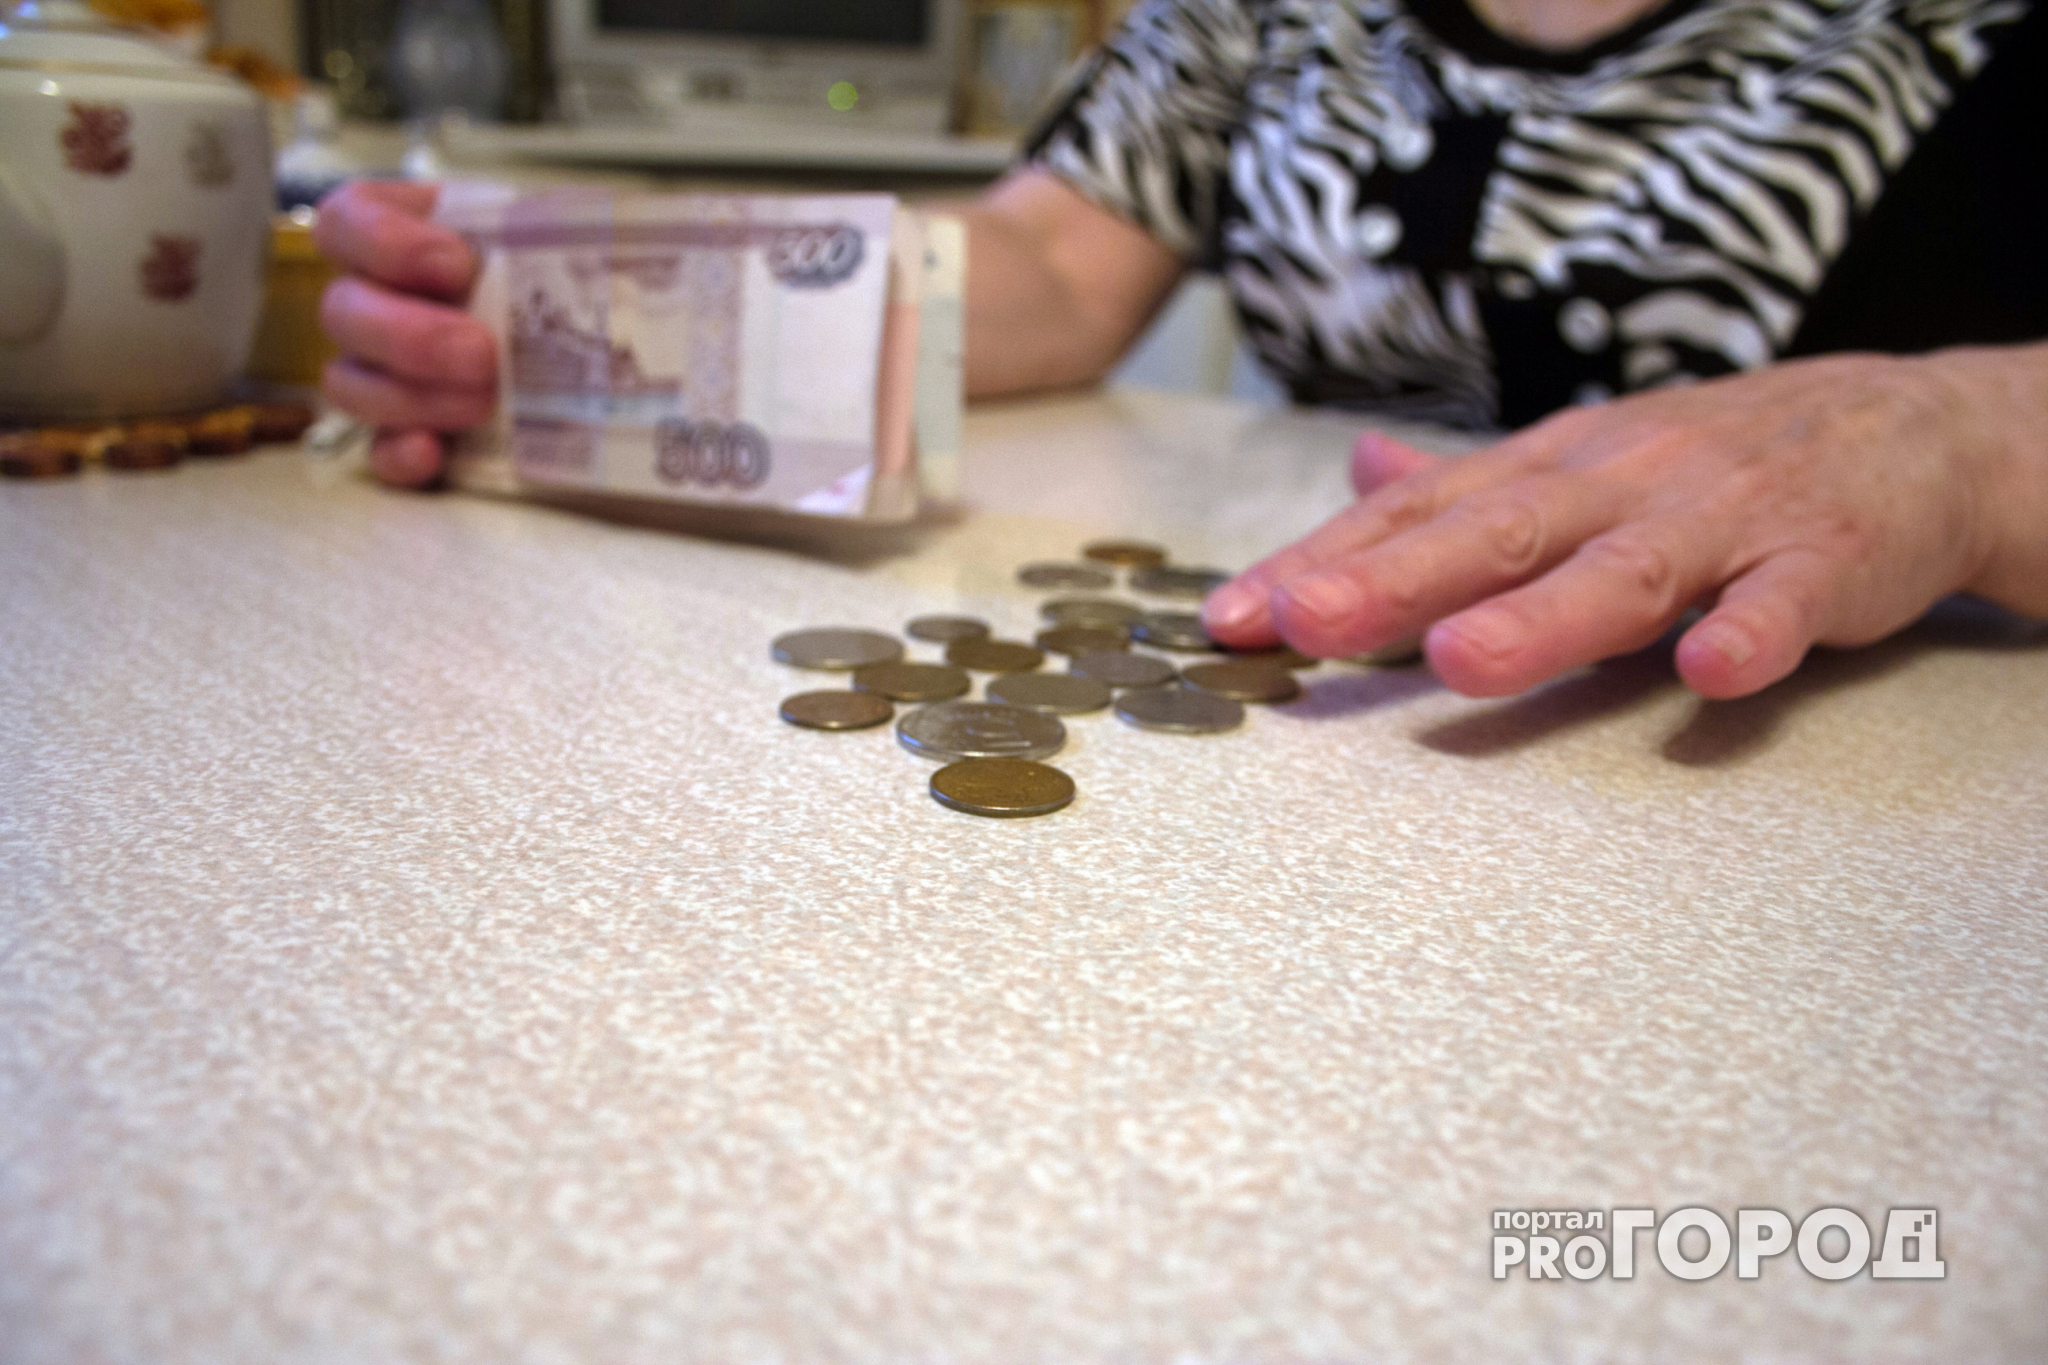 В Ярославле пенсионерка поменяла 10 тысяч рублей на воздух